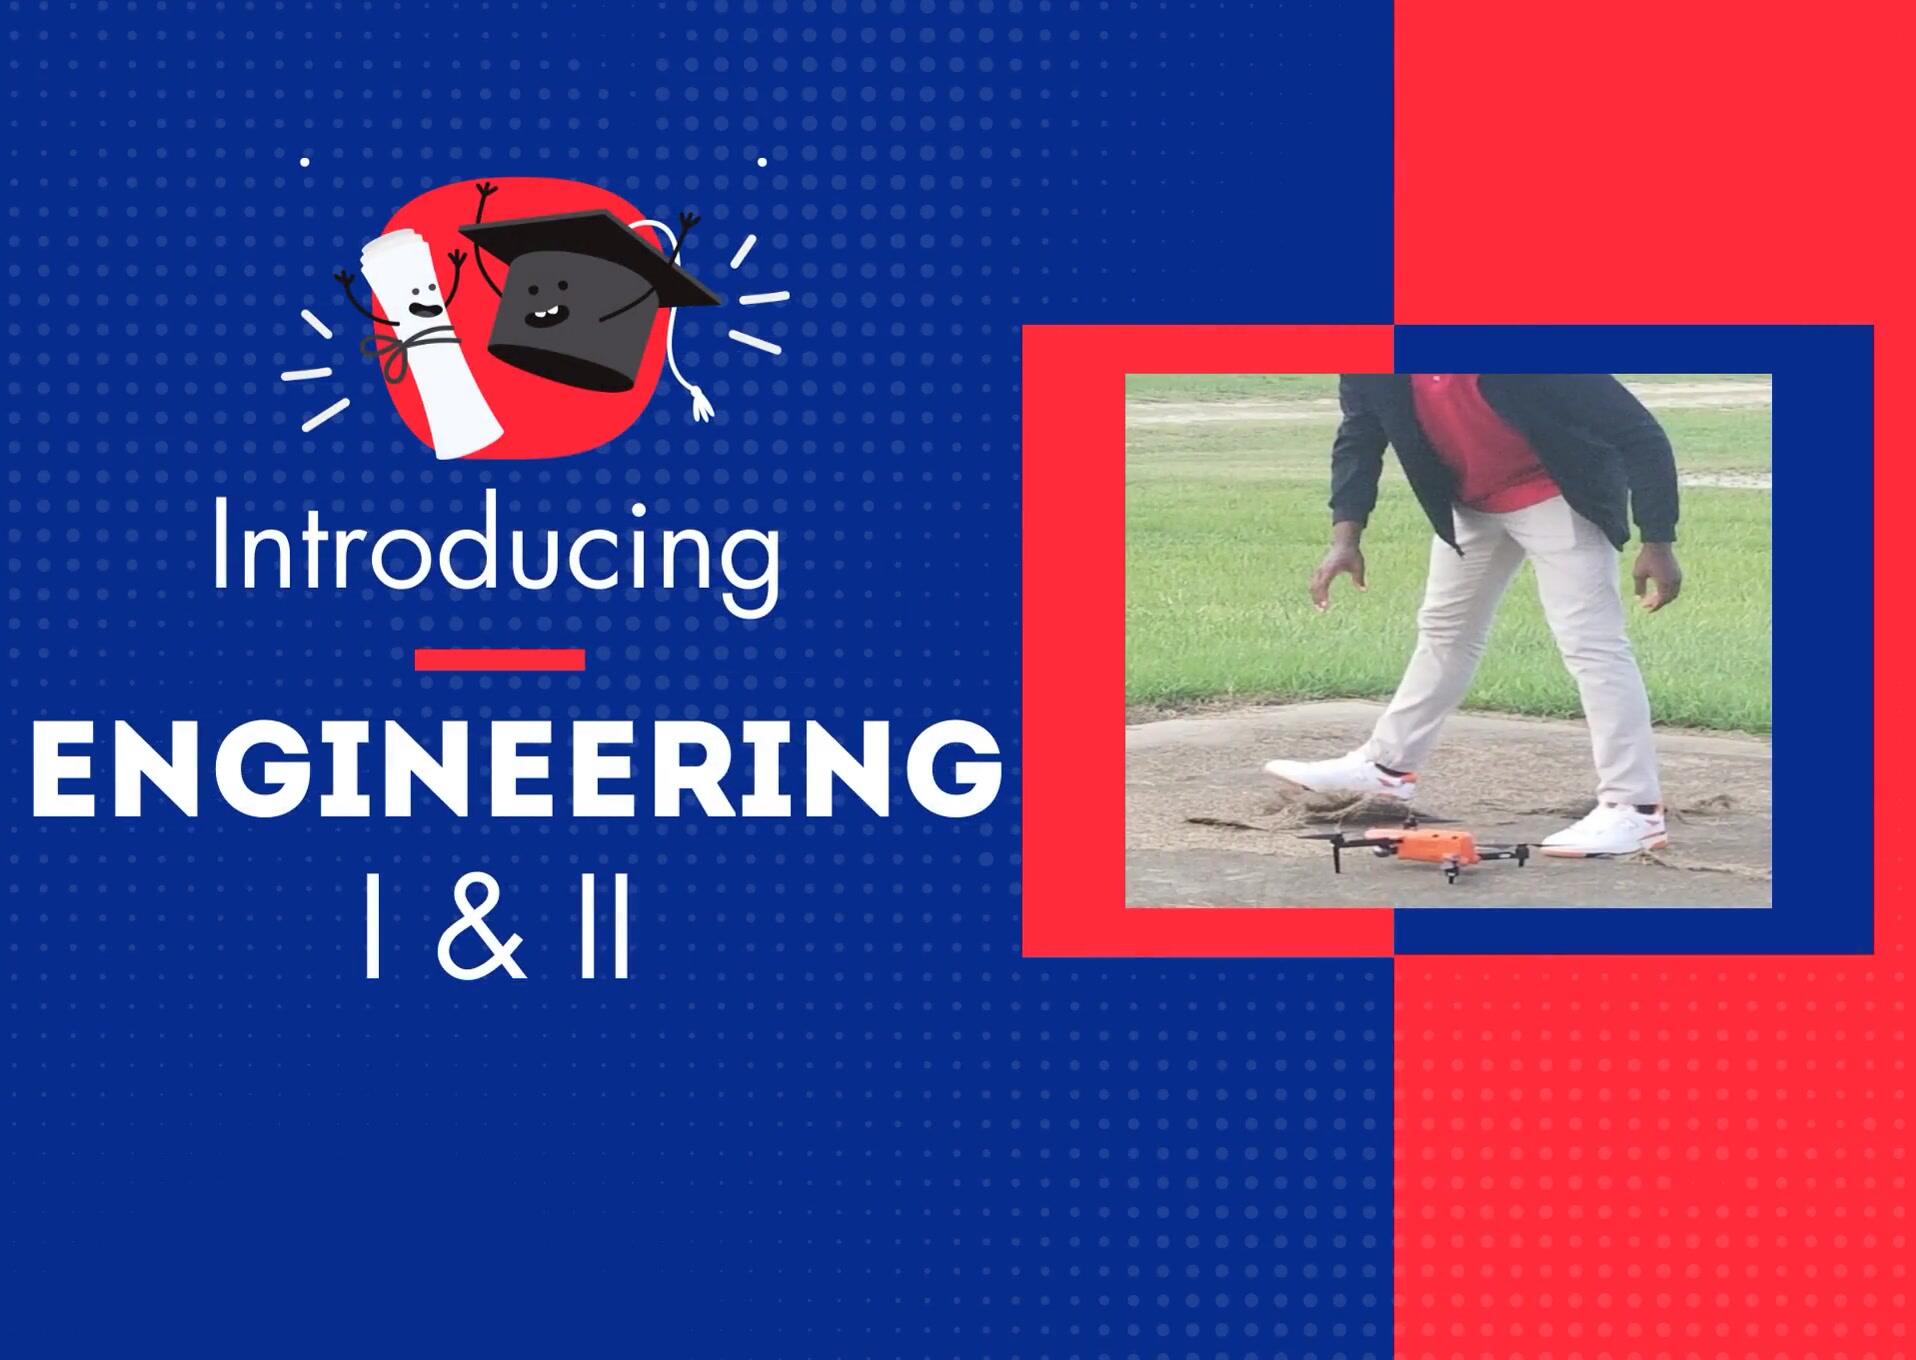 Introducing Engineering I & II